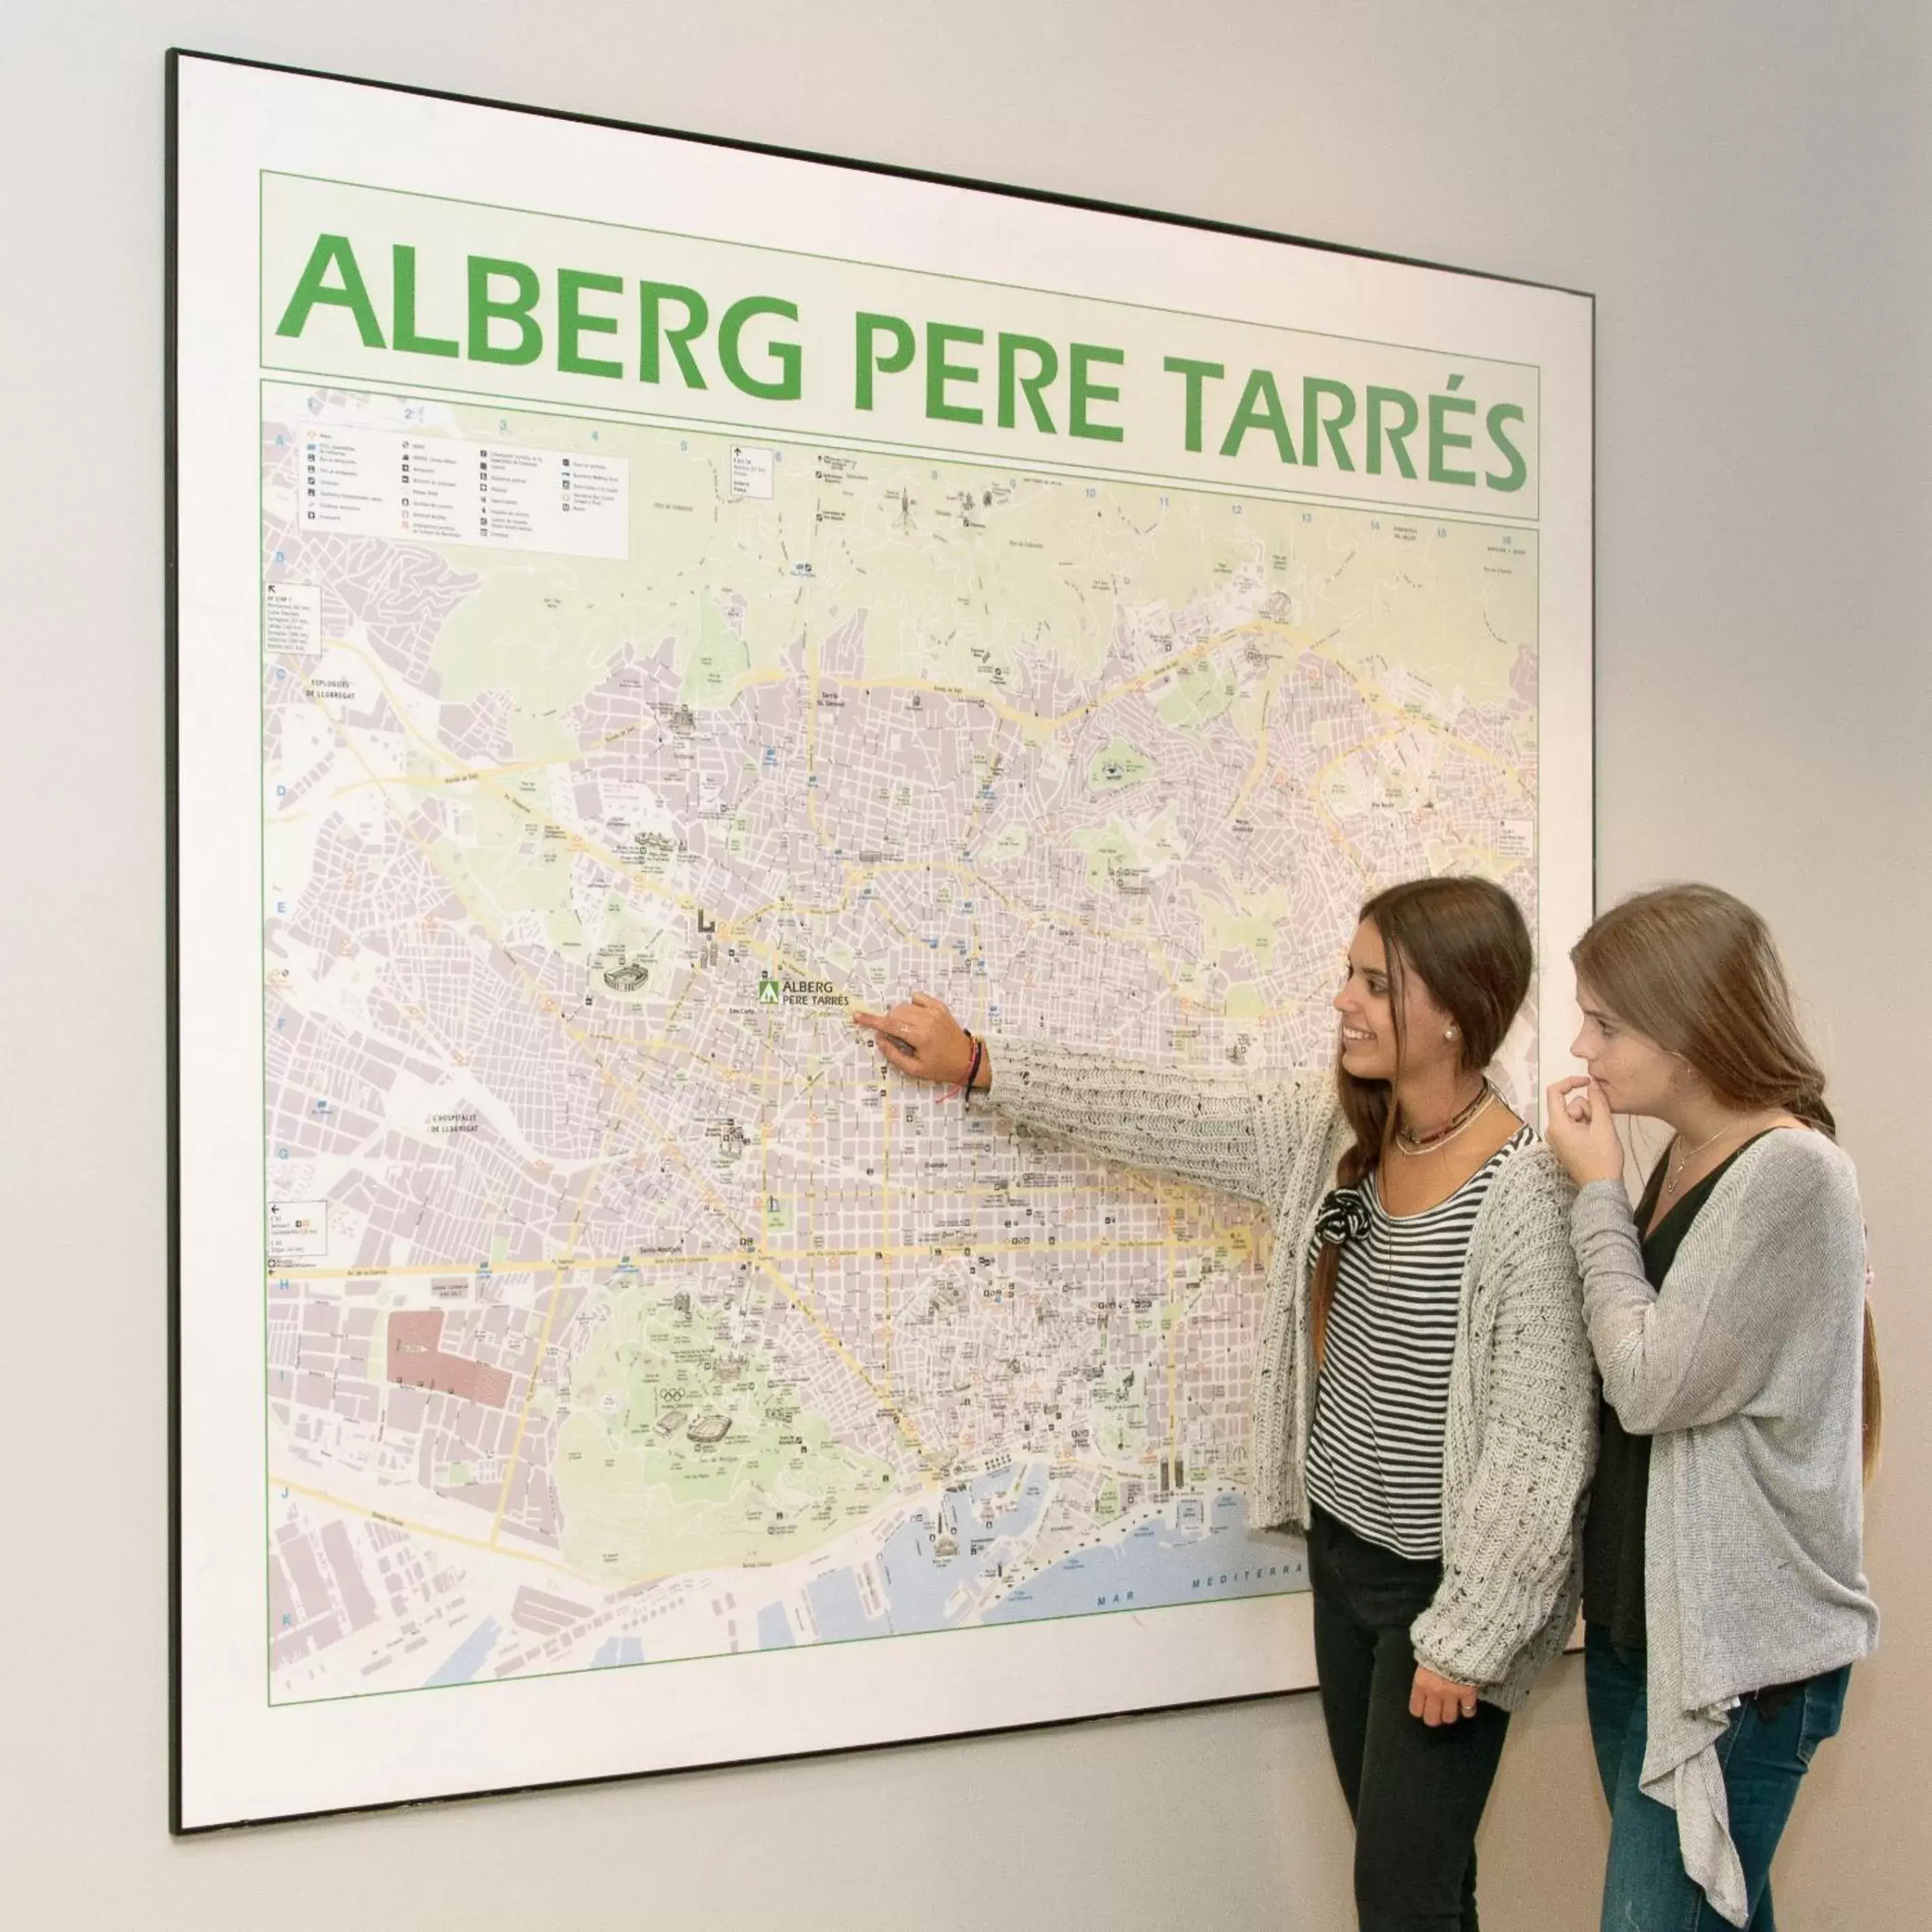 People in Alberg Pere Tarrés